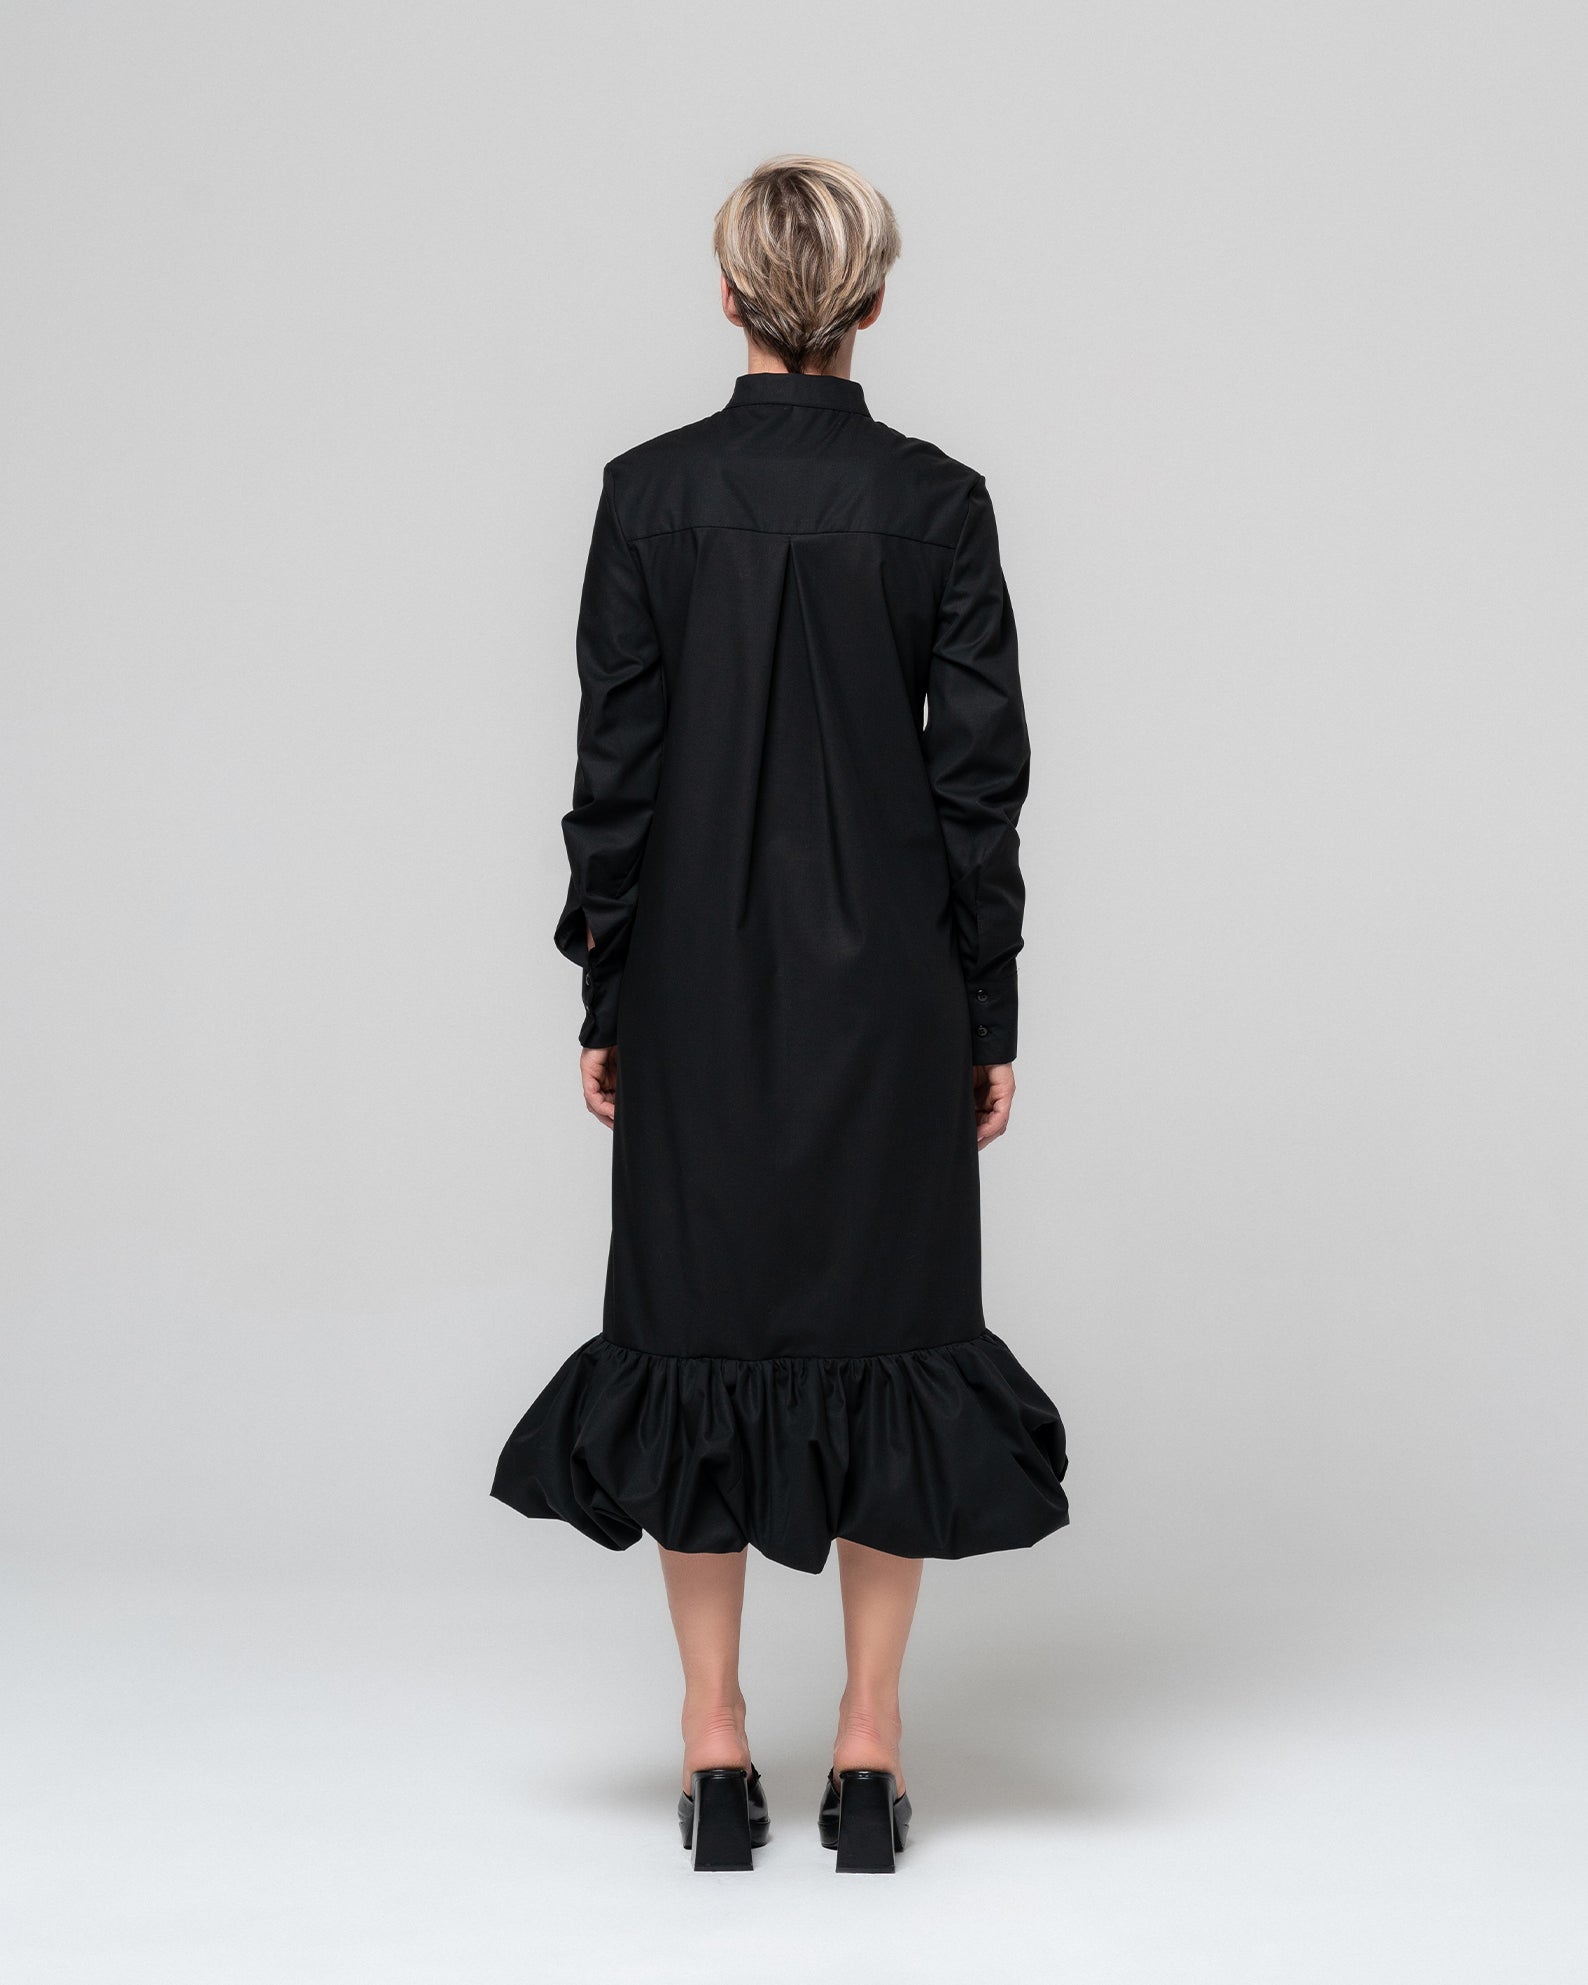 SOLA BLACK SHIRT DRESS - RONI HELOU